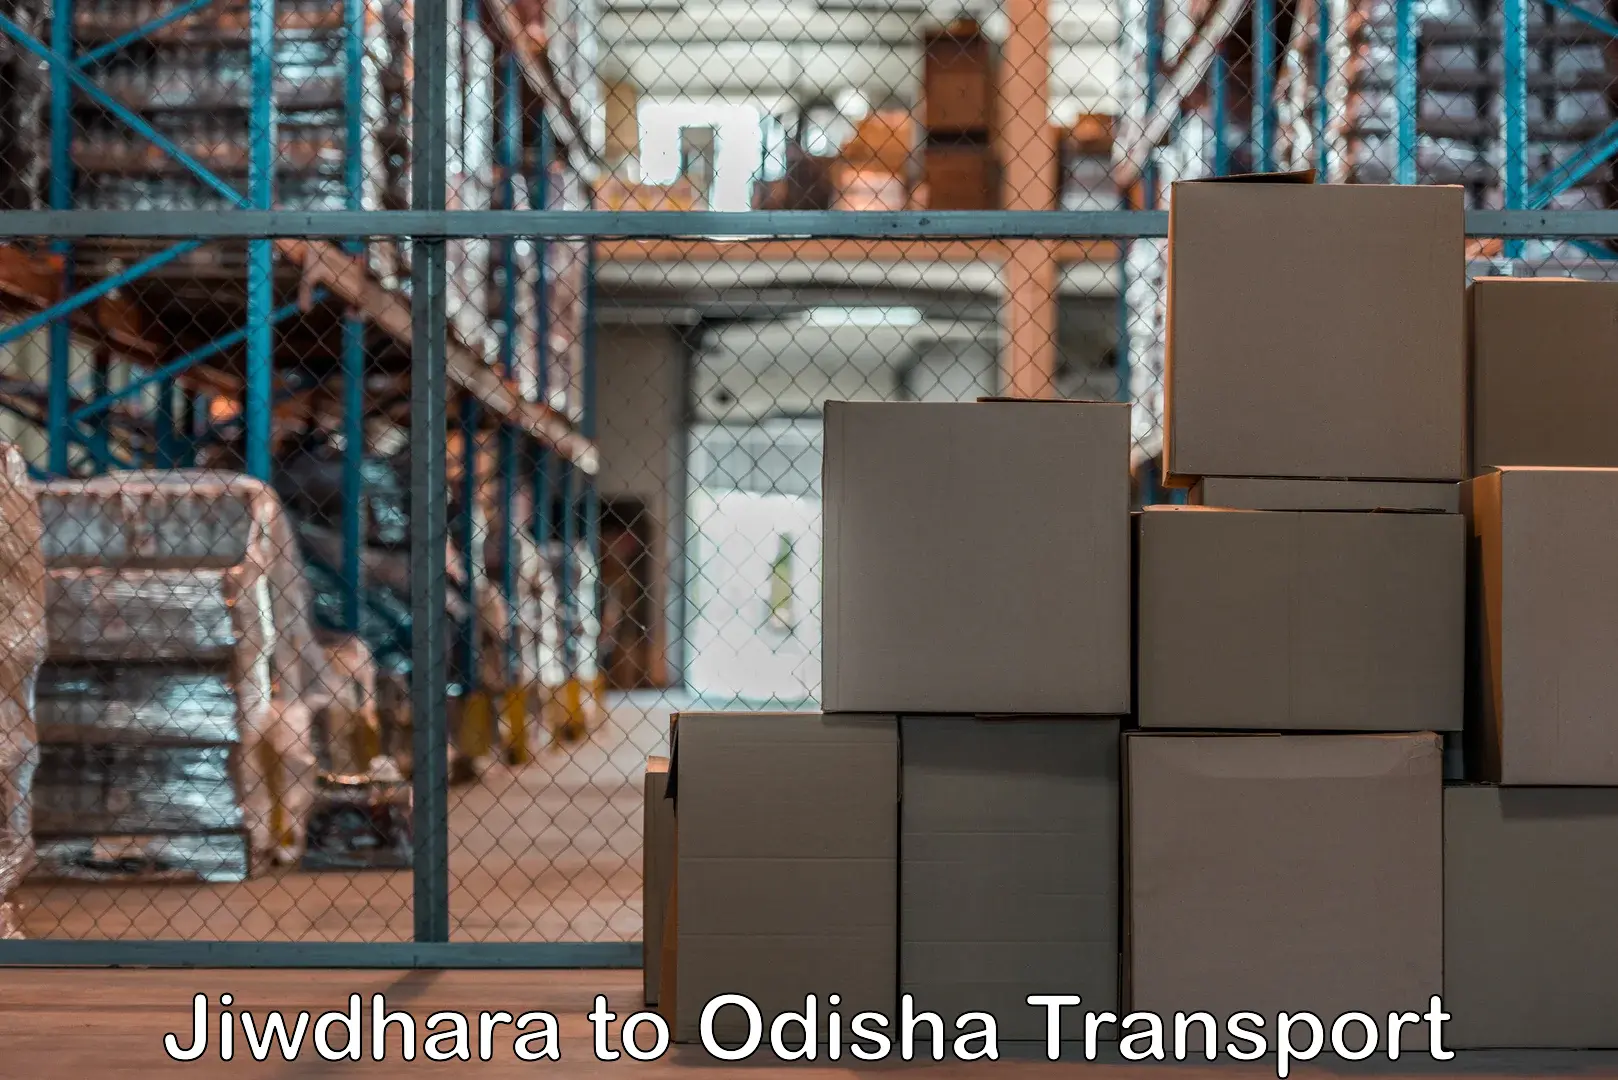 Commercial transport service Jiwdhara to Mahakalapada